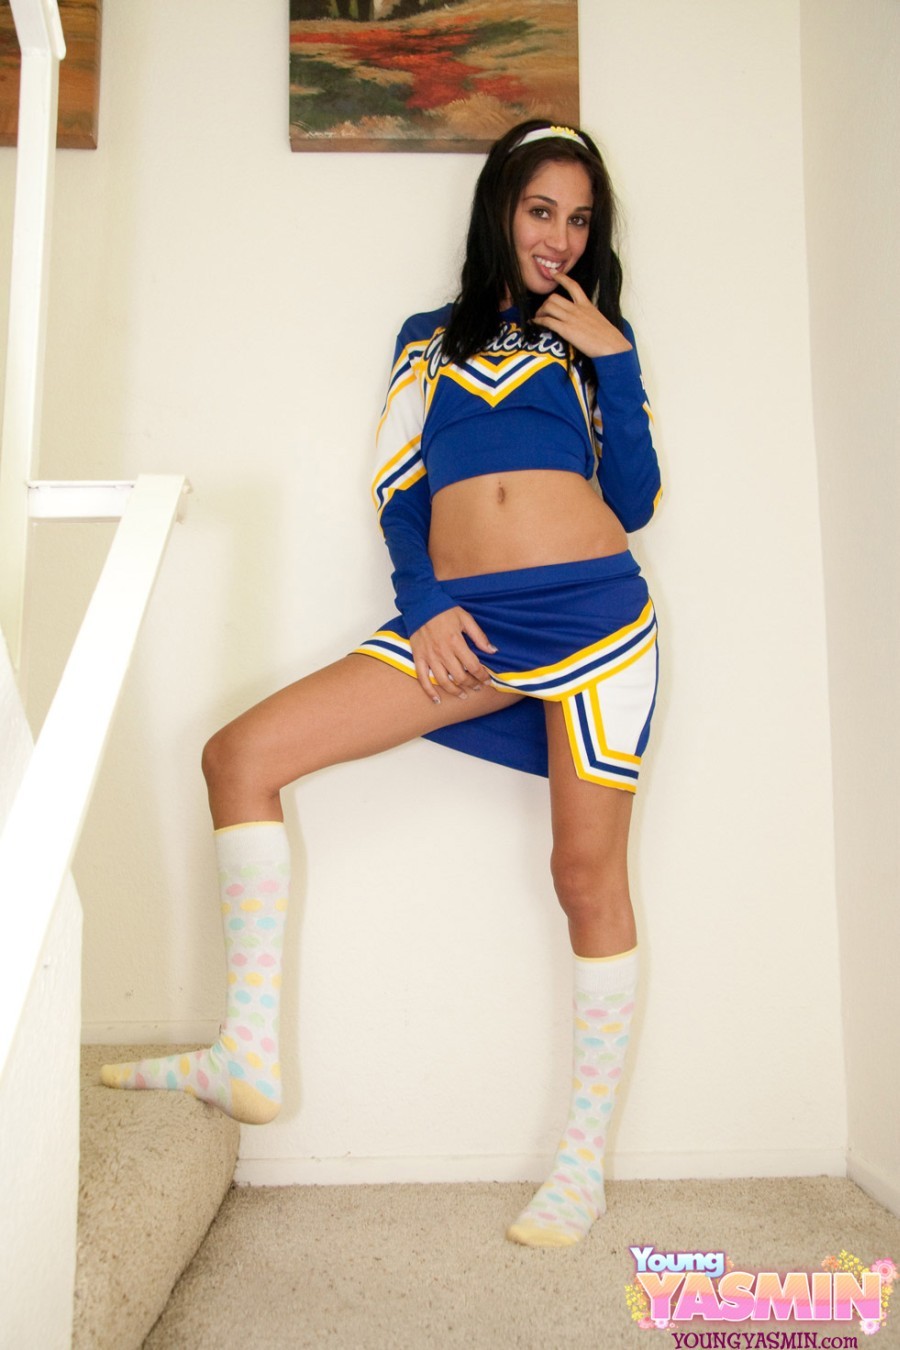 Teen brunette teasing in sexy cheerleader uniform